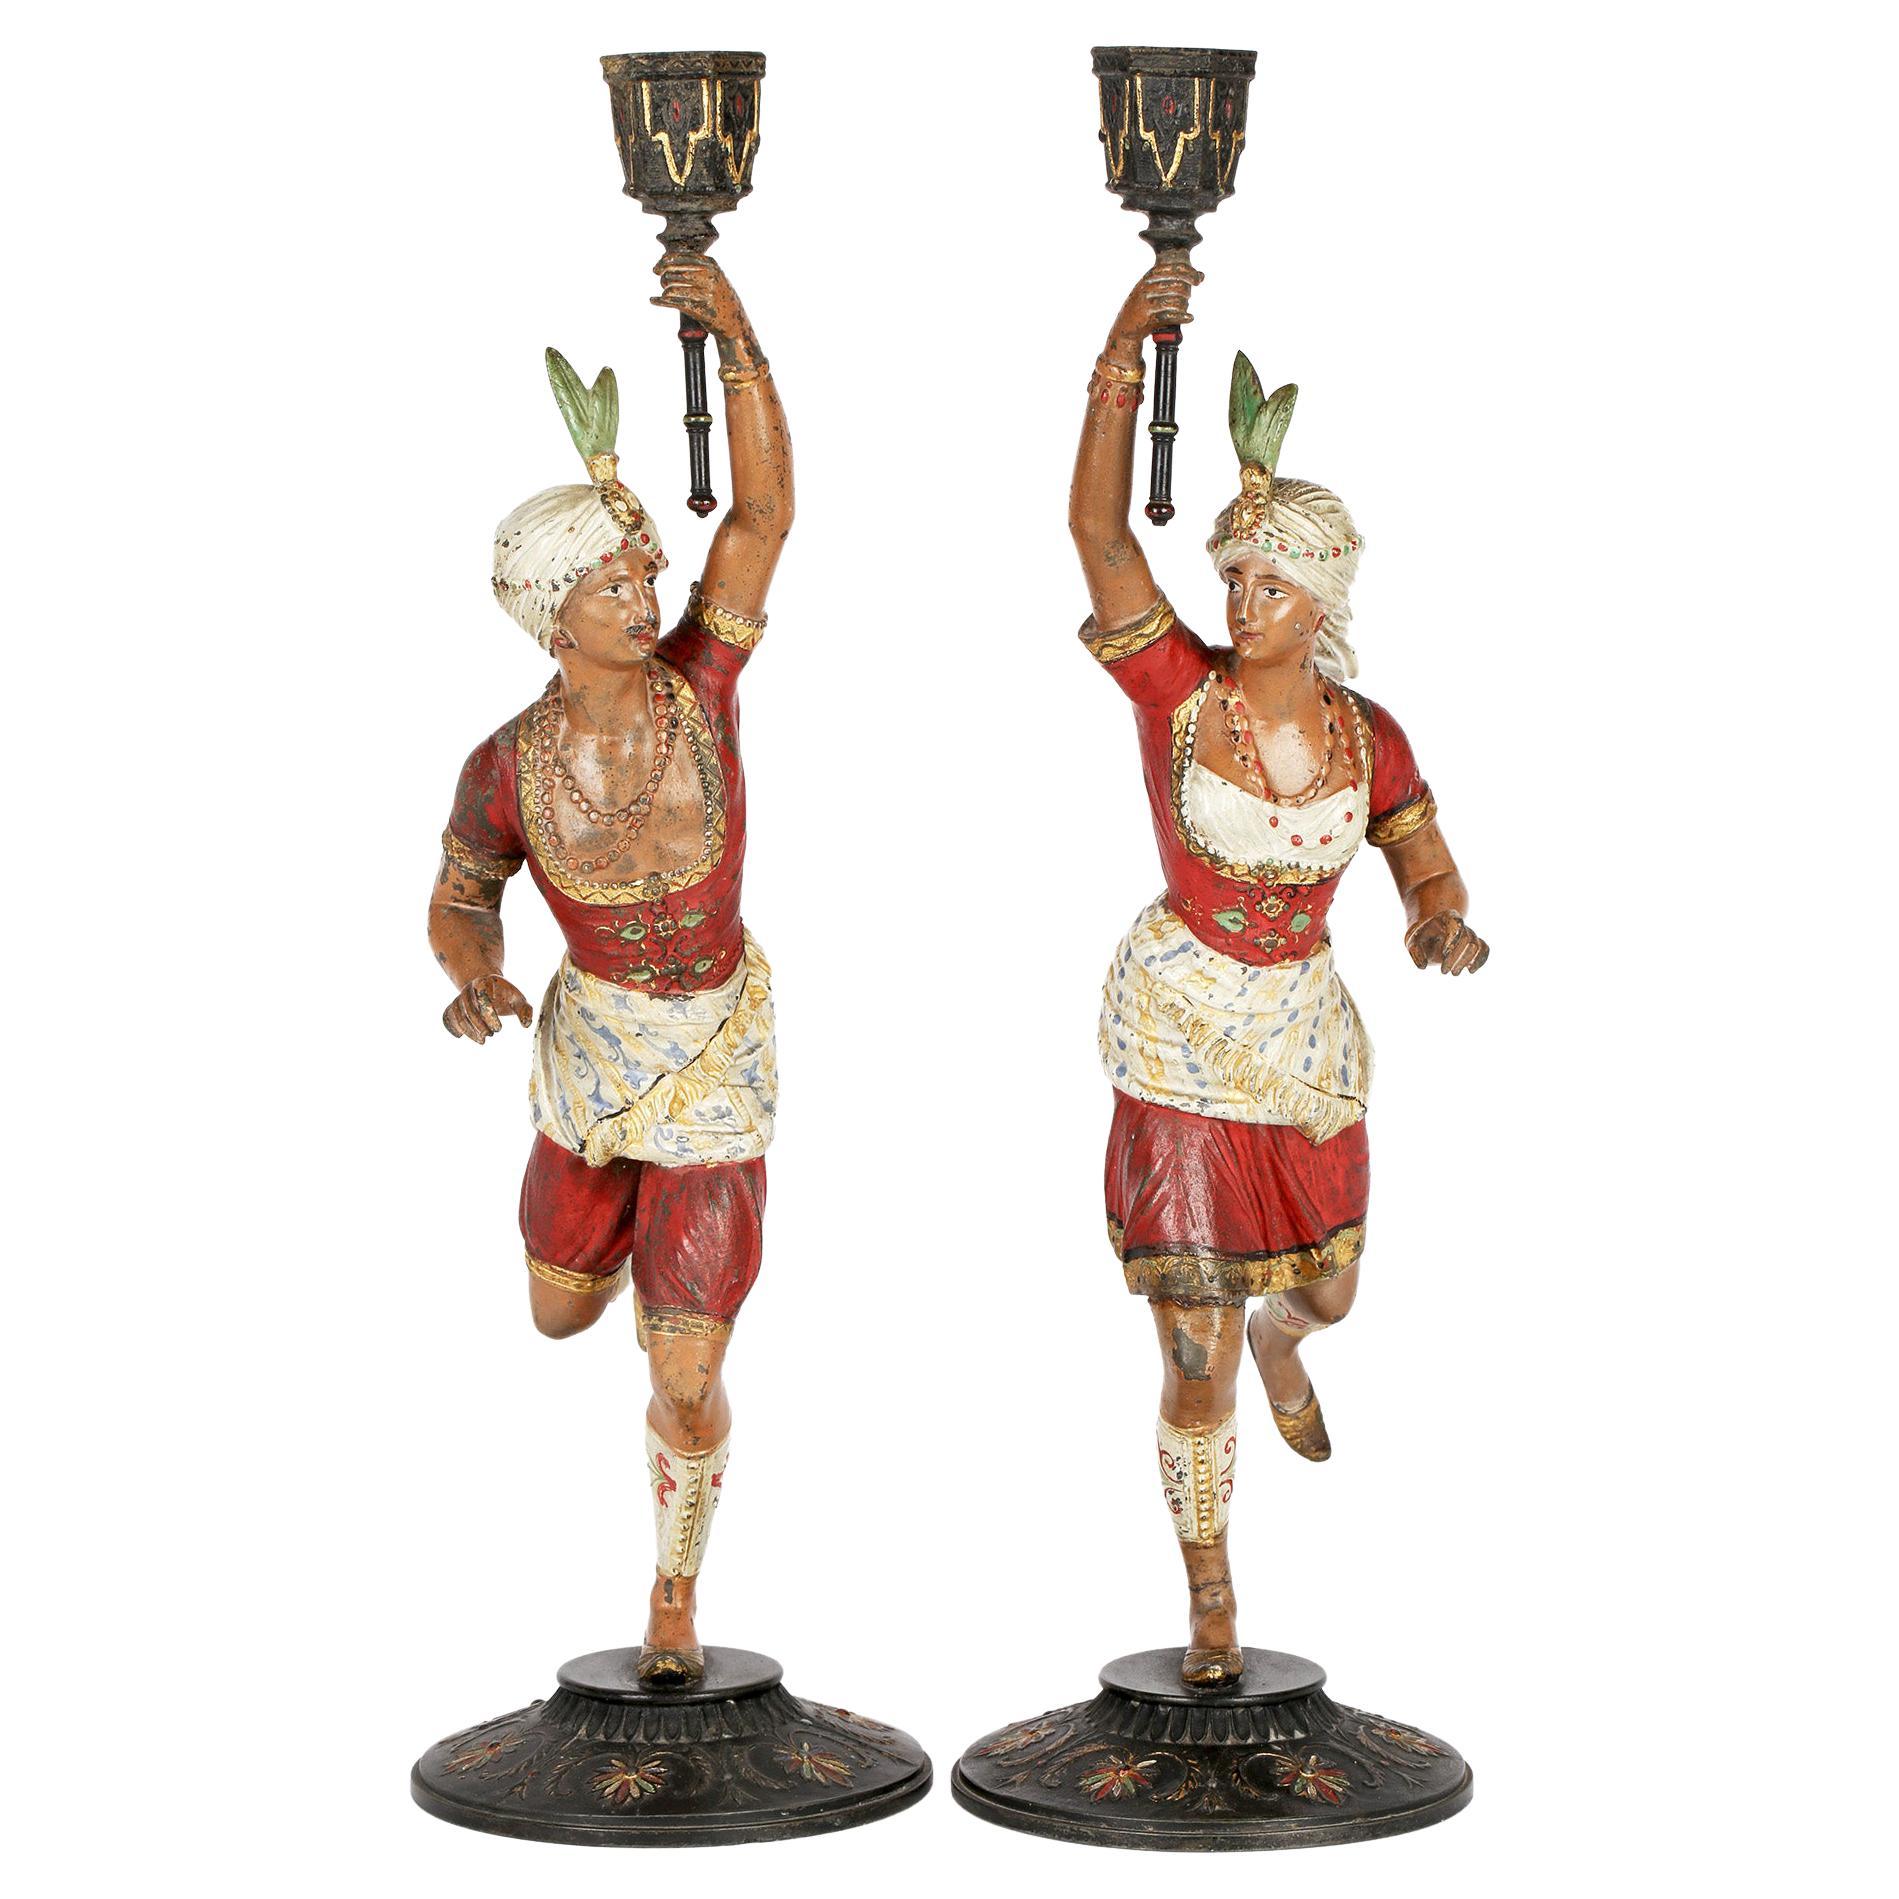 Paire de chandeliers figuratifs continentaux, probablement français, en métal peint à froid